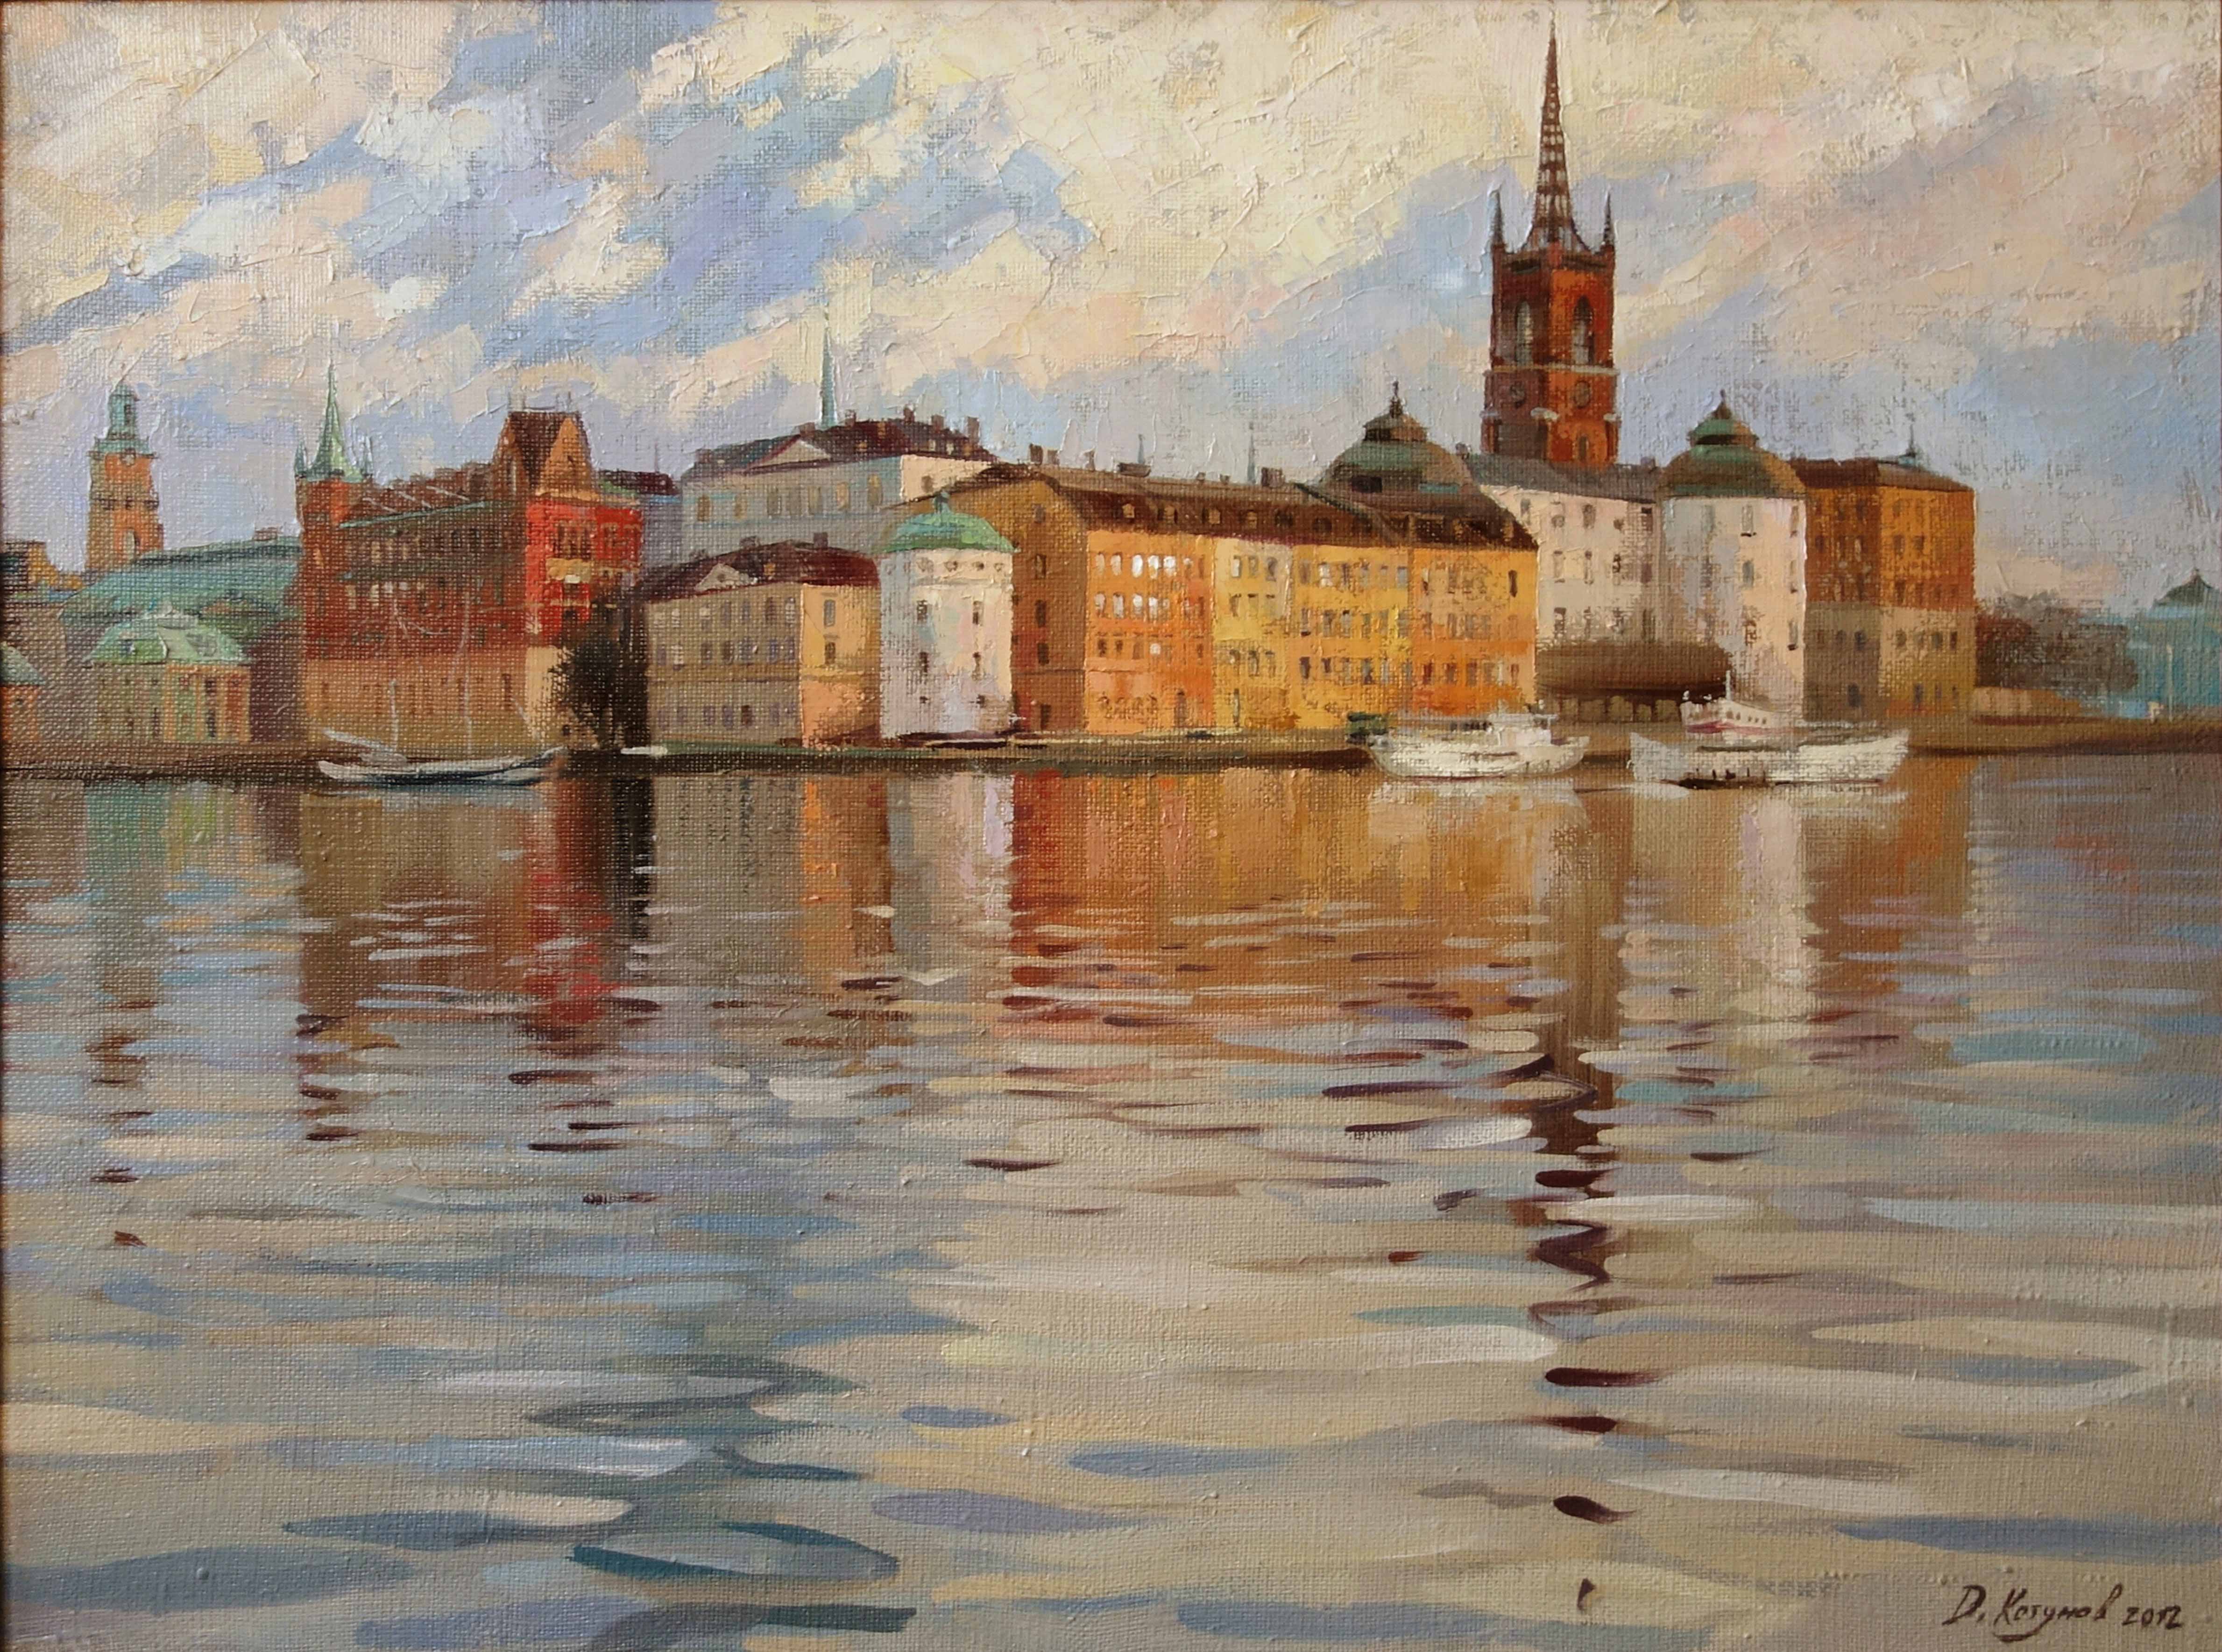 Stockholm - 1, Dmitry Kotunov, Buy the painting Oil